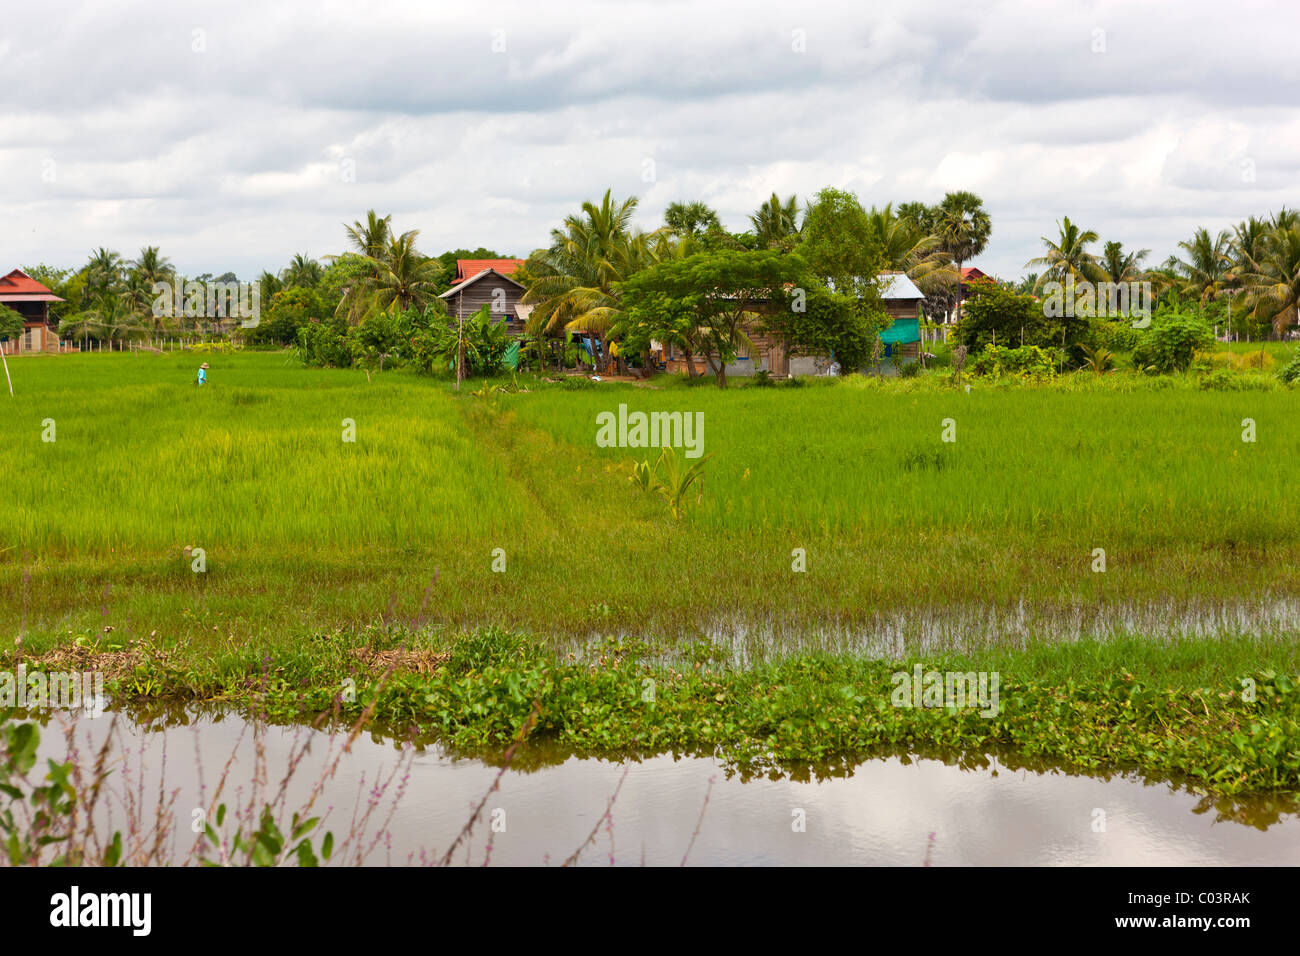 Paysage avec champ de riz. La province de Siem Reap. Le Cambodge. Asie Banque D'Images